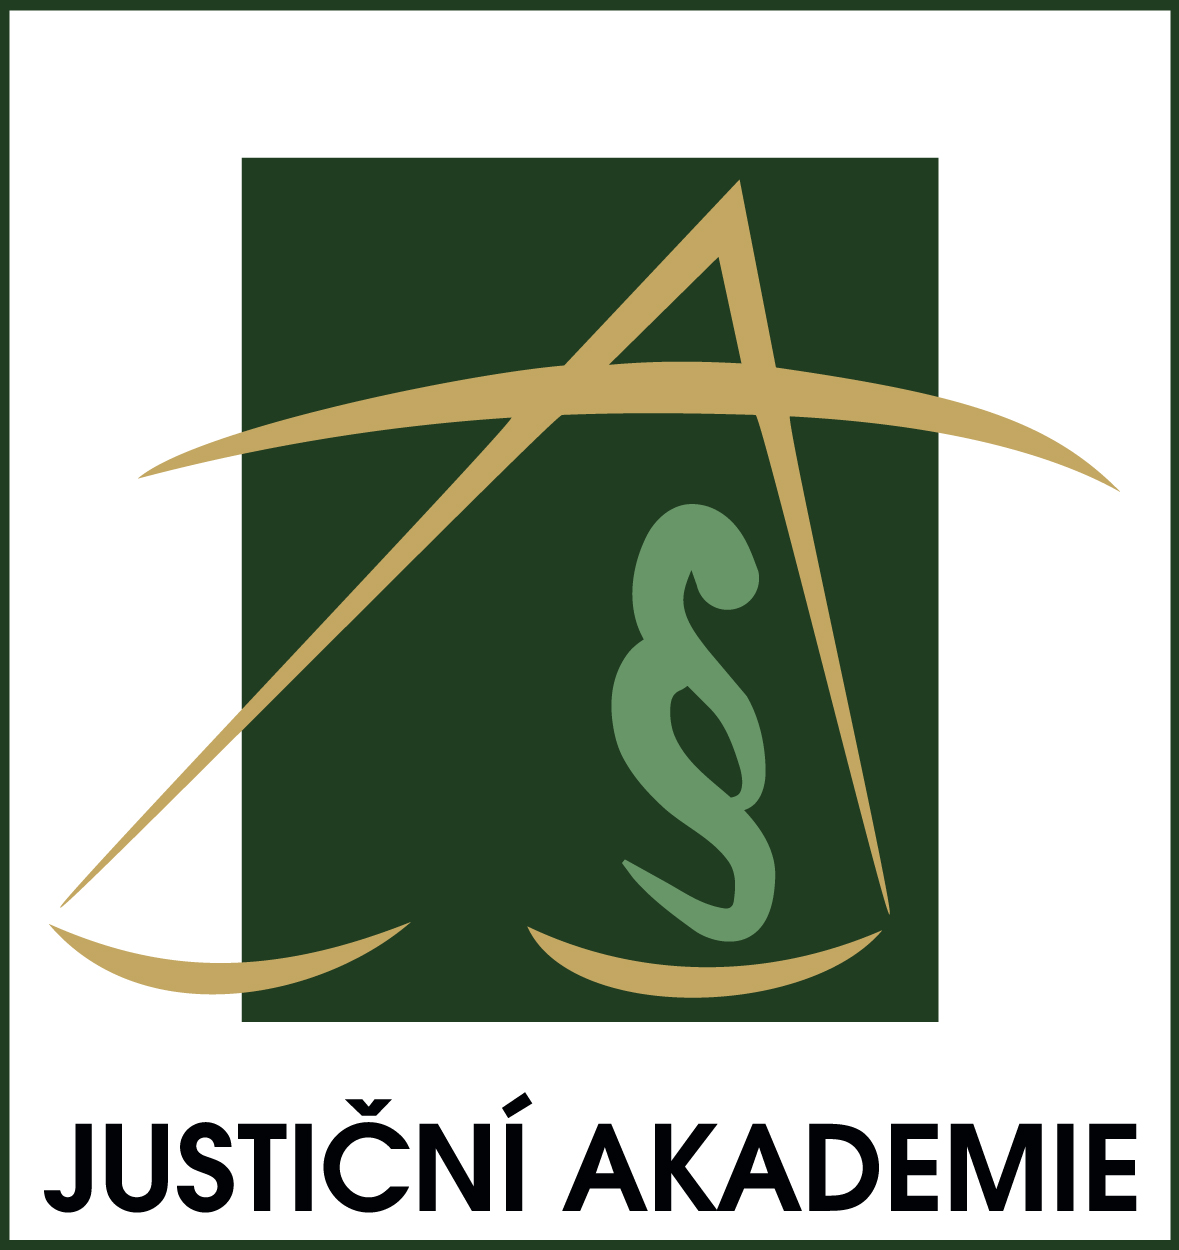 Judicial Academy